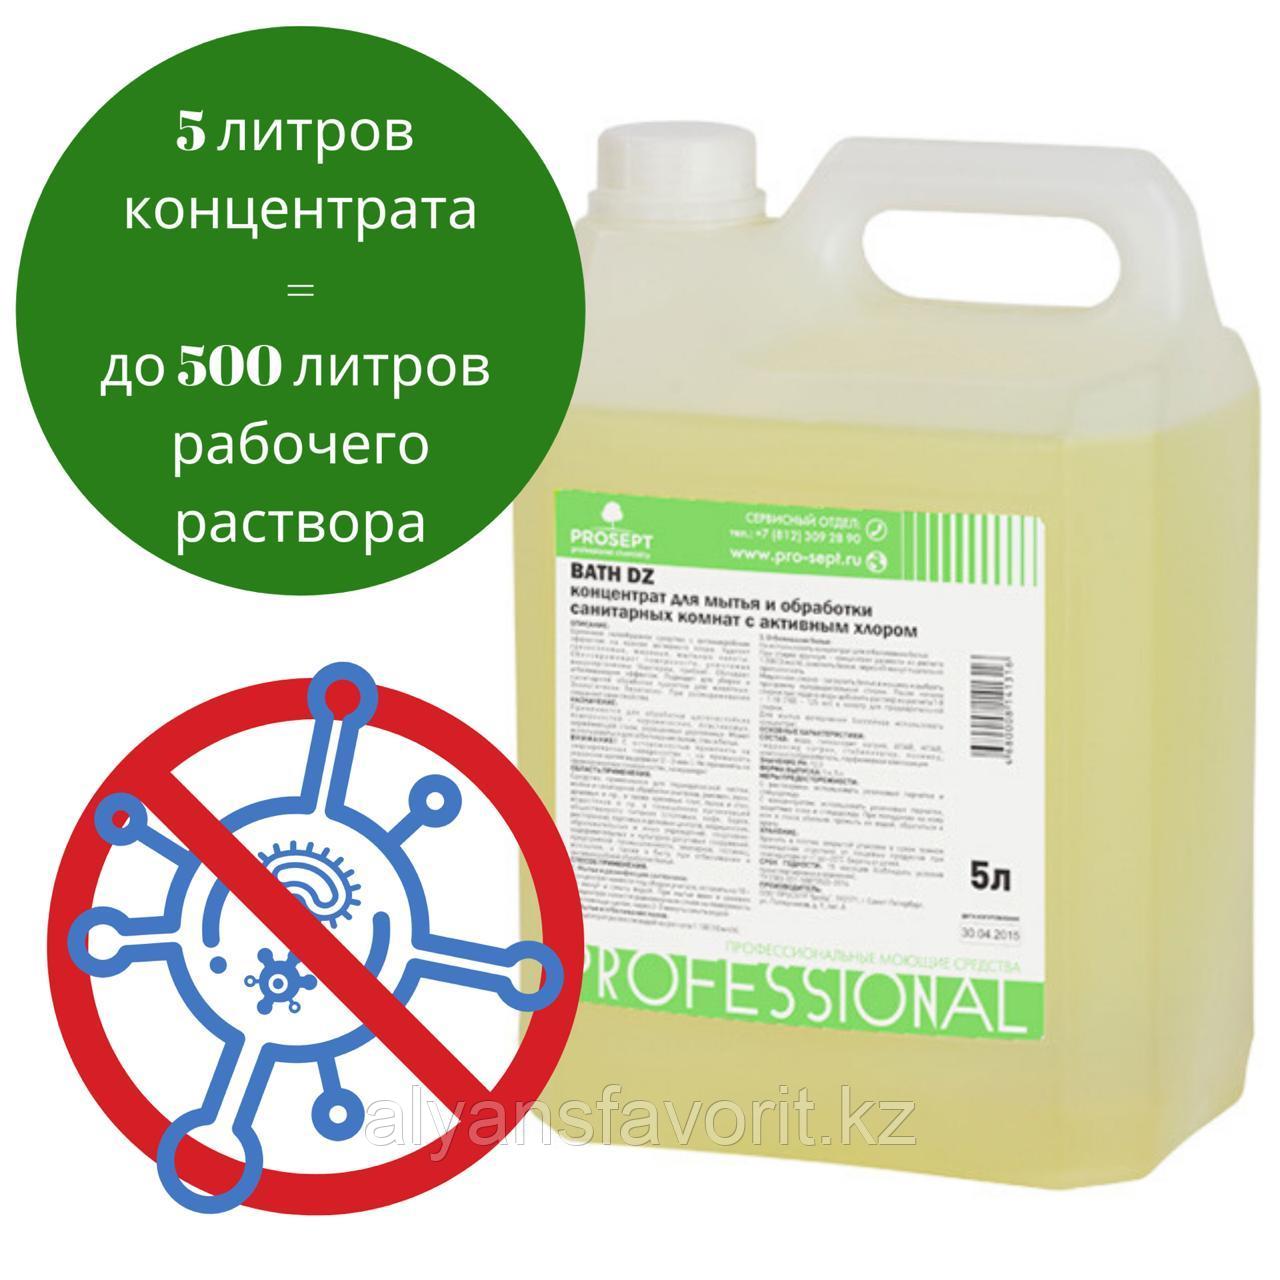 Bath DZ- концентрат для мытья и дезинфекции санитарных комнат. 5 литров.РФ